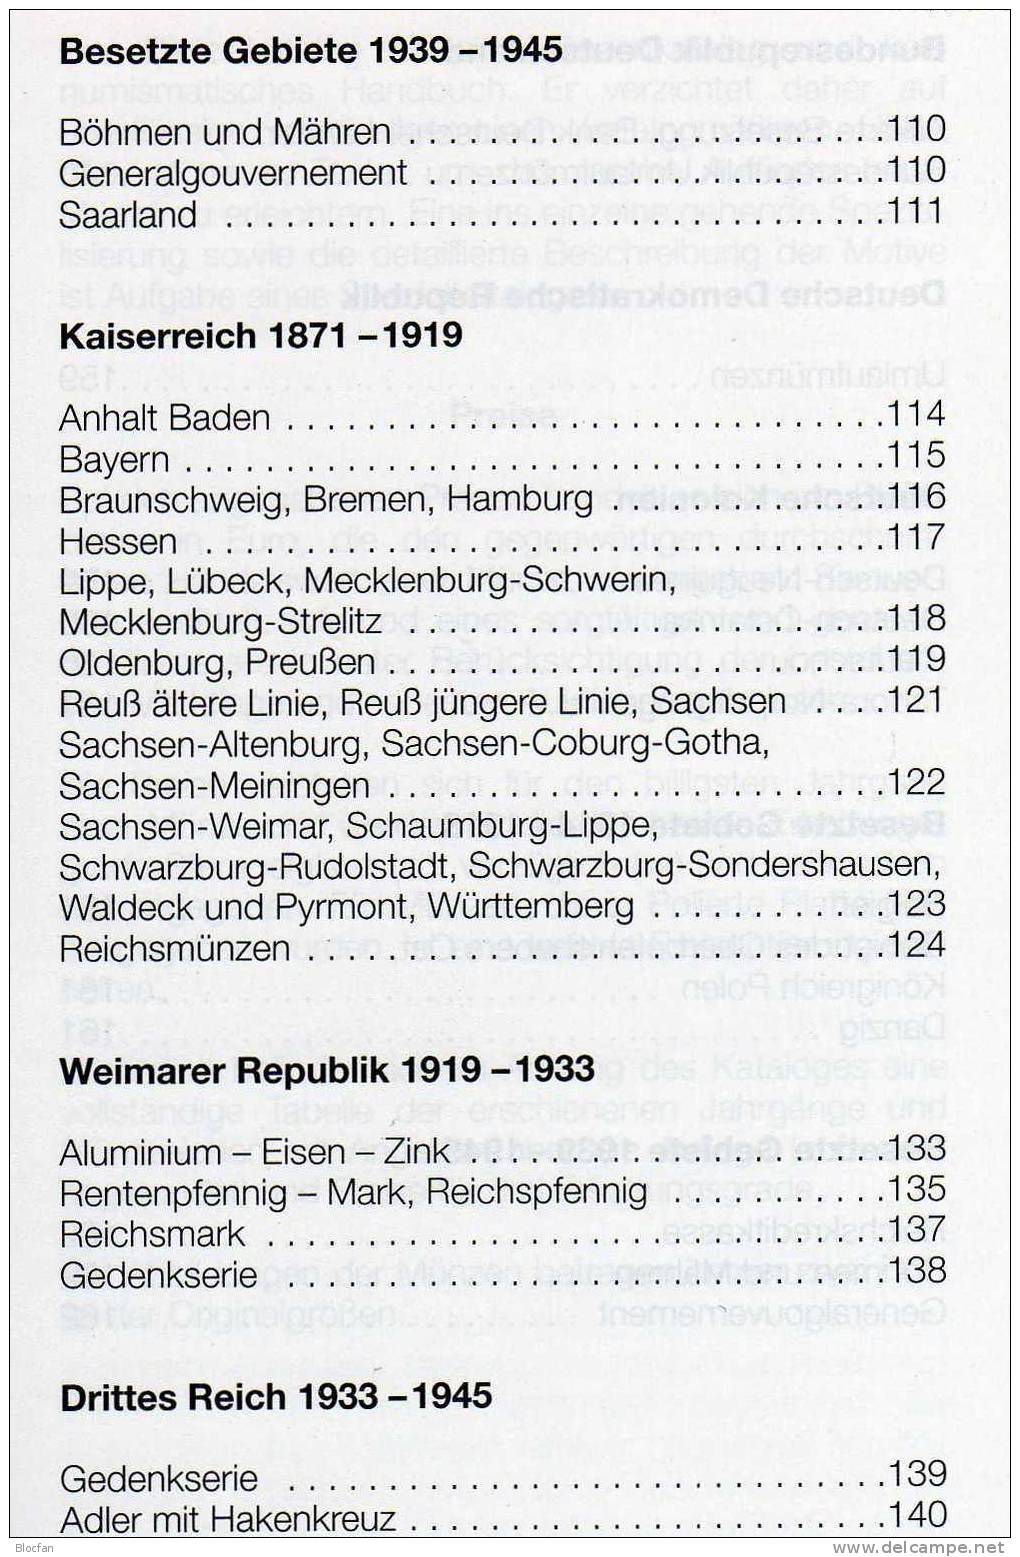 Münzen-Katalog Deutschland 2011 Neu 6€ Preiswerter DIETZEL Für Münzen Ab 1871 Catalogue Coins From Old And New Germany - Chroniken & Jahrbücher